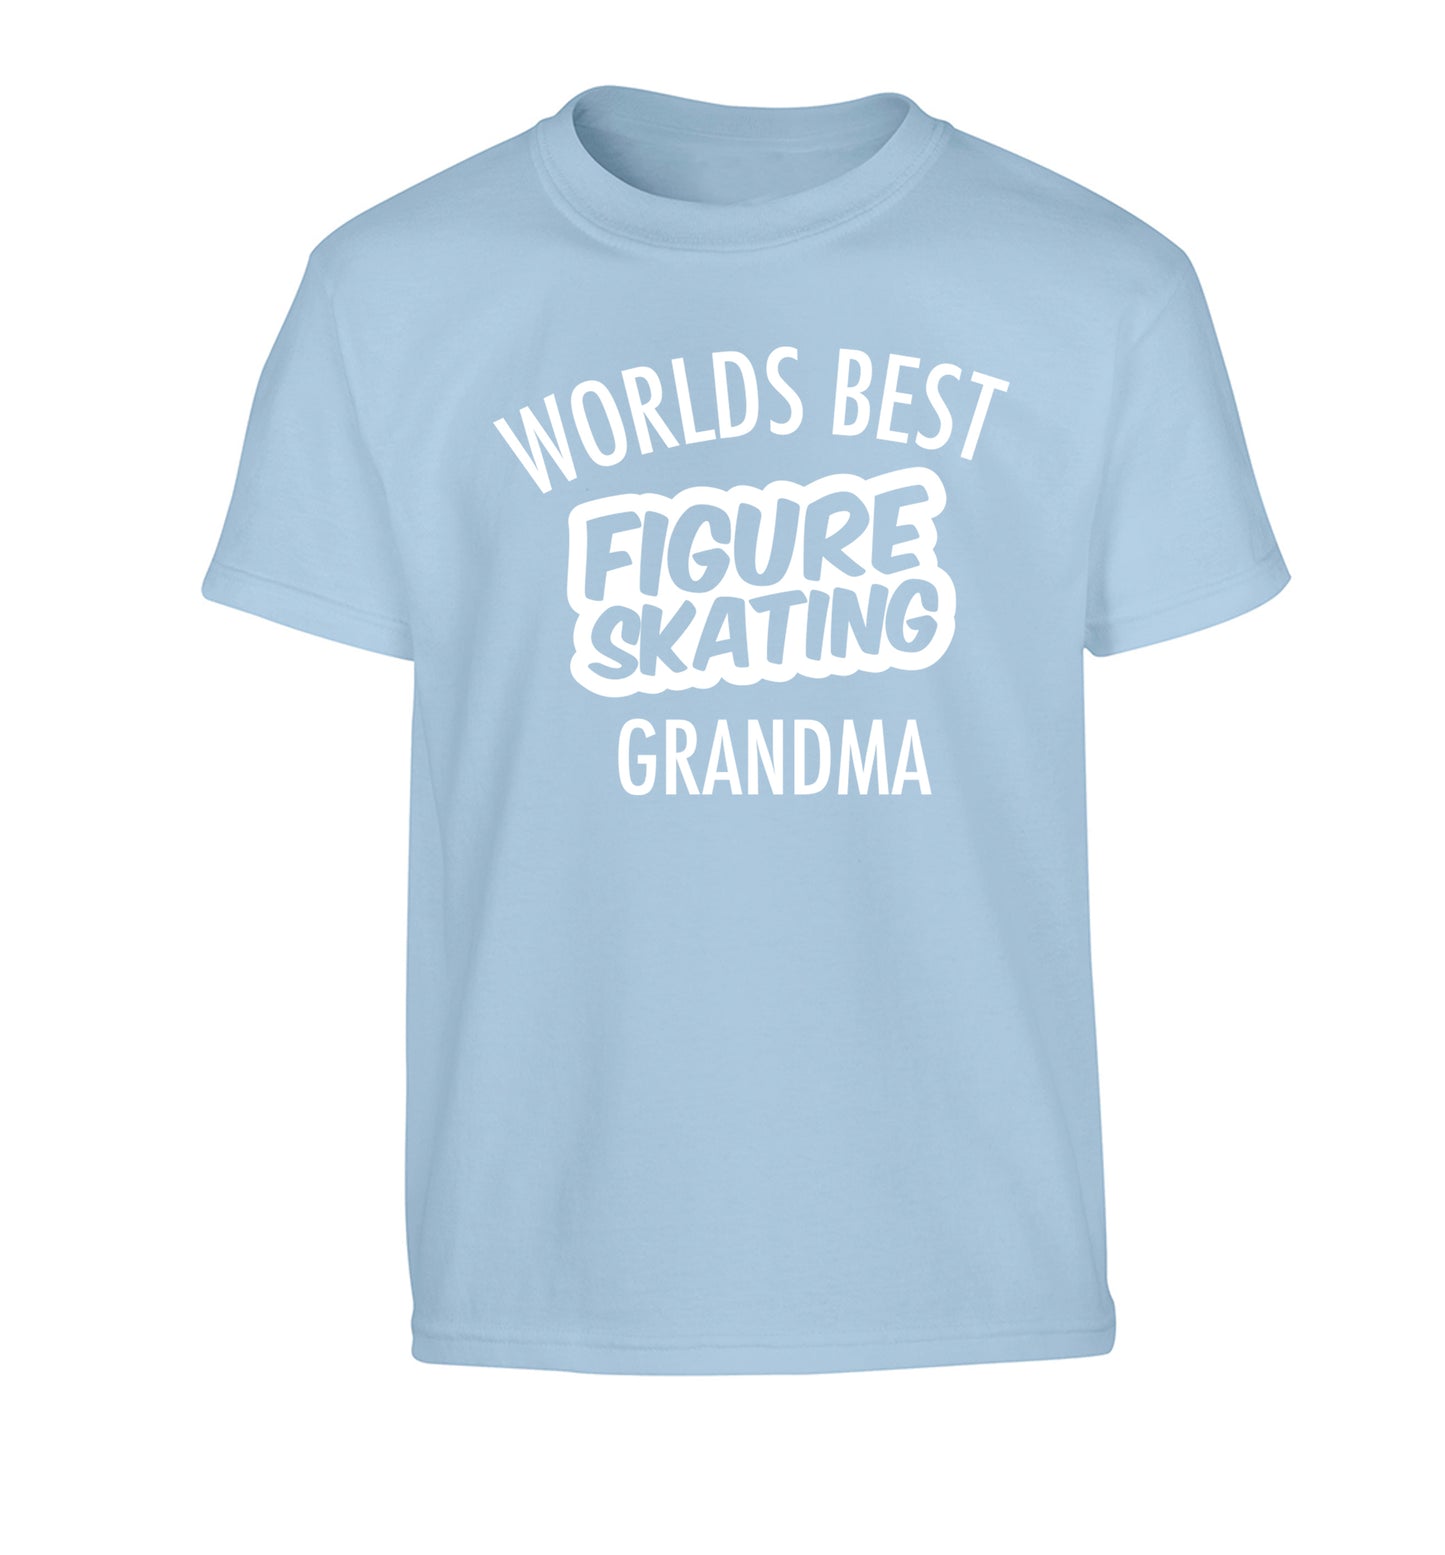 Worlds best figure skating grandma Children's light blue Tshirt 12-14 Years